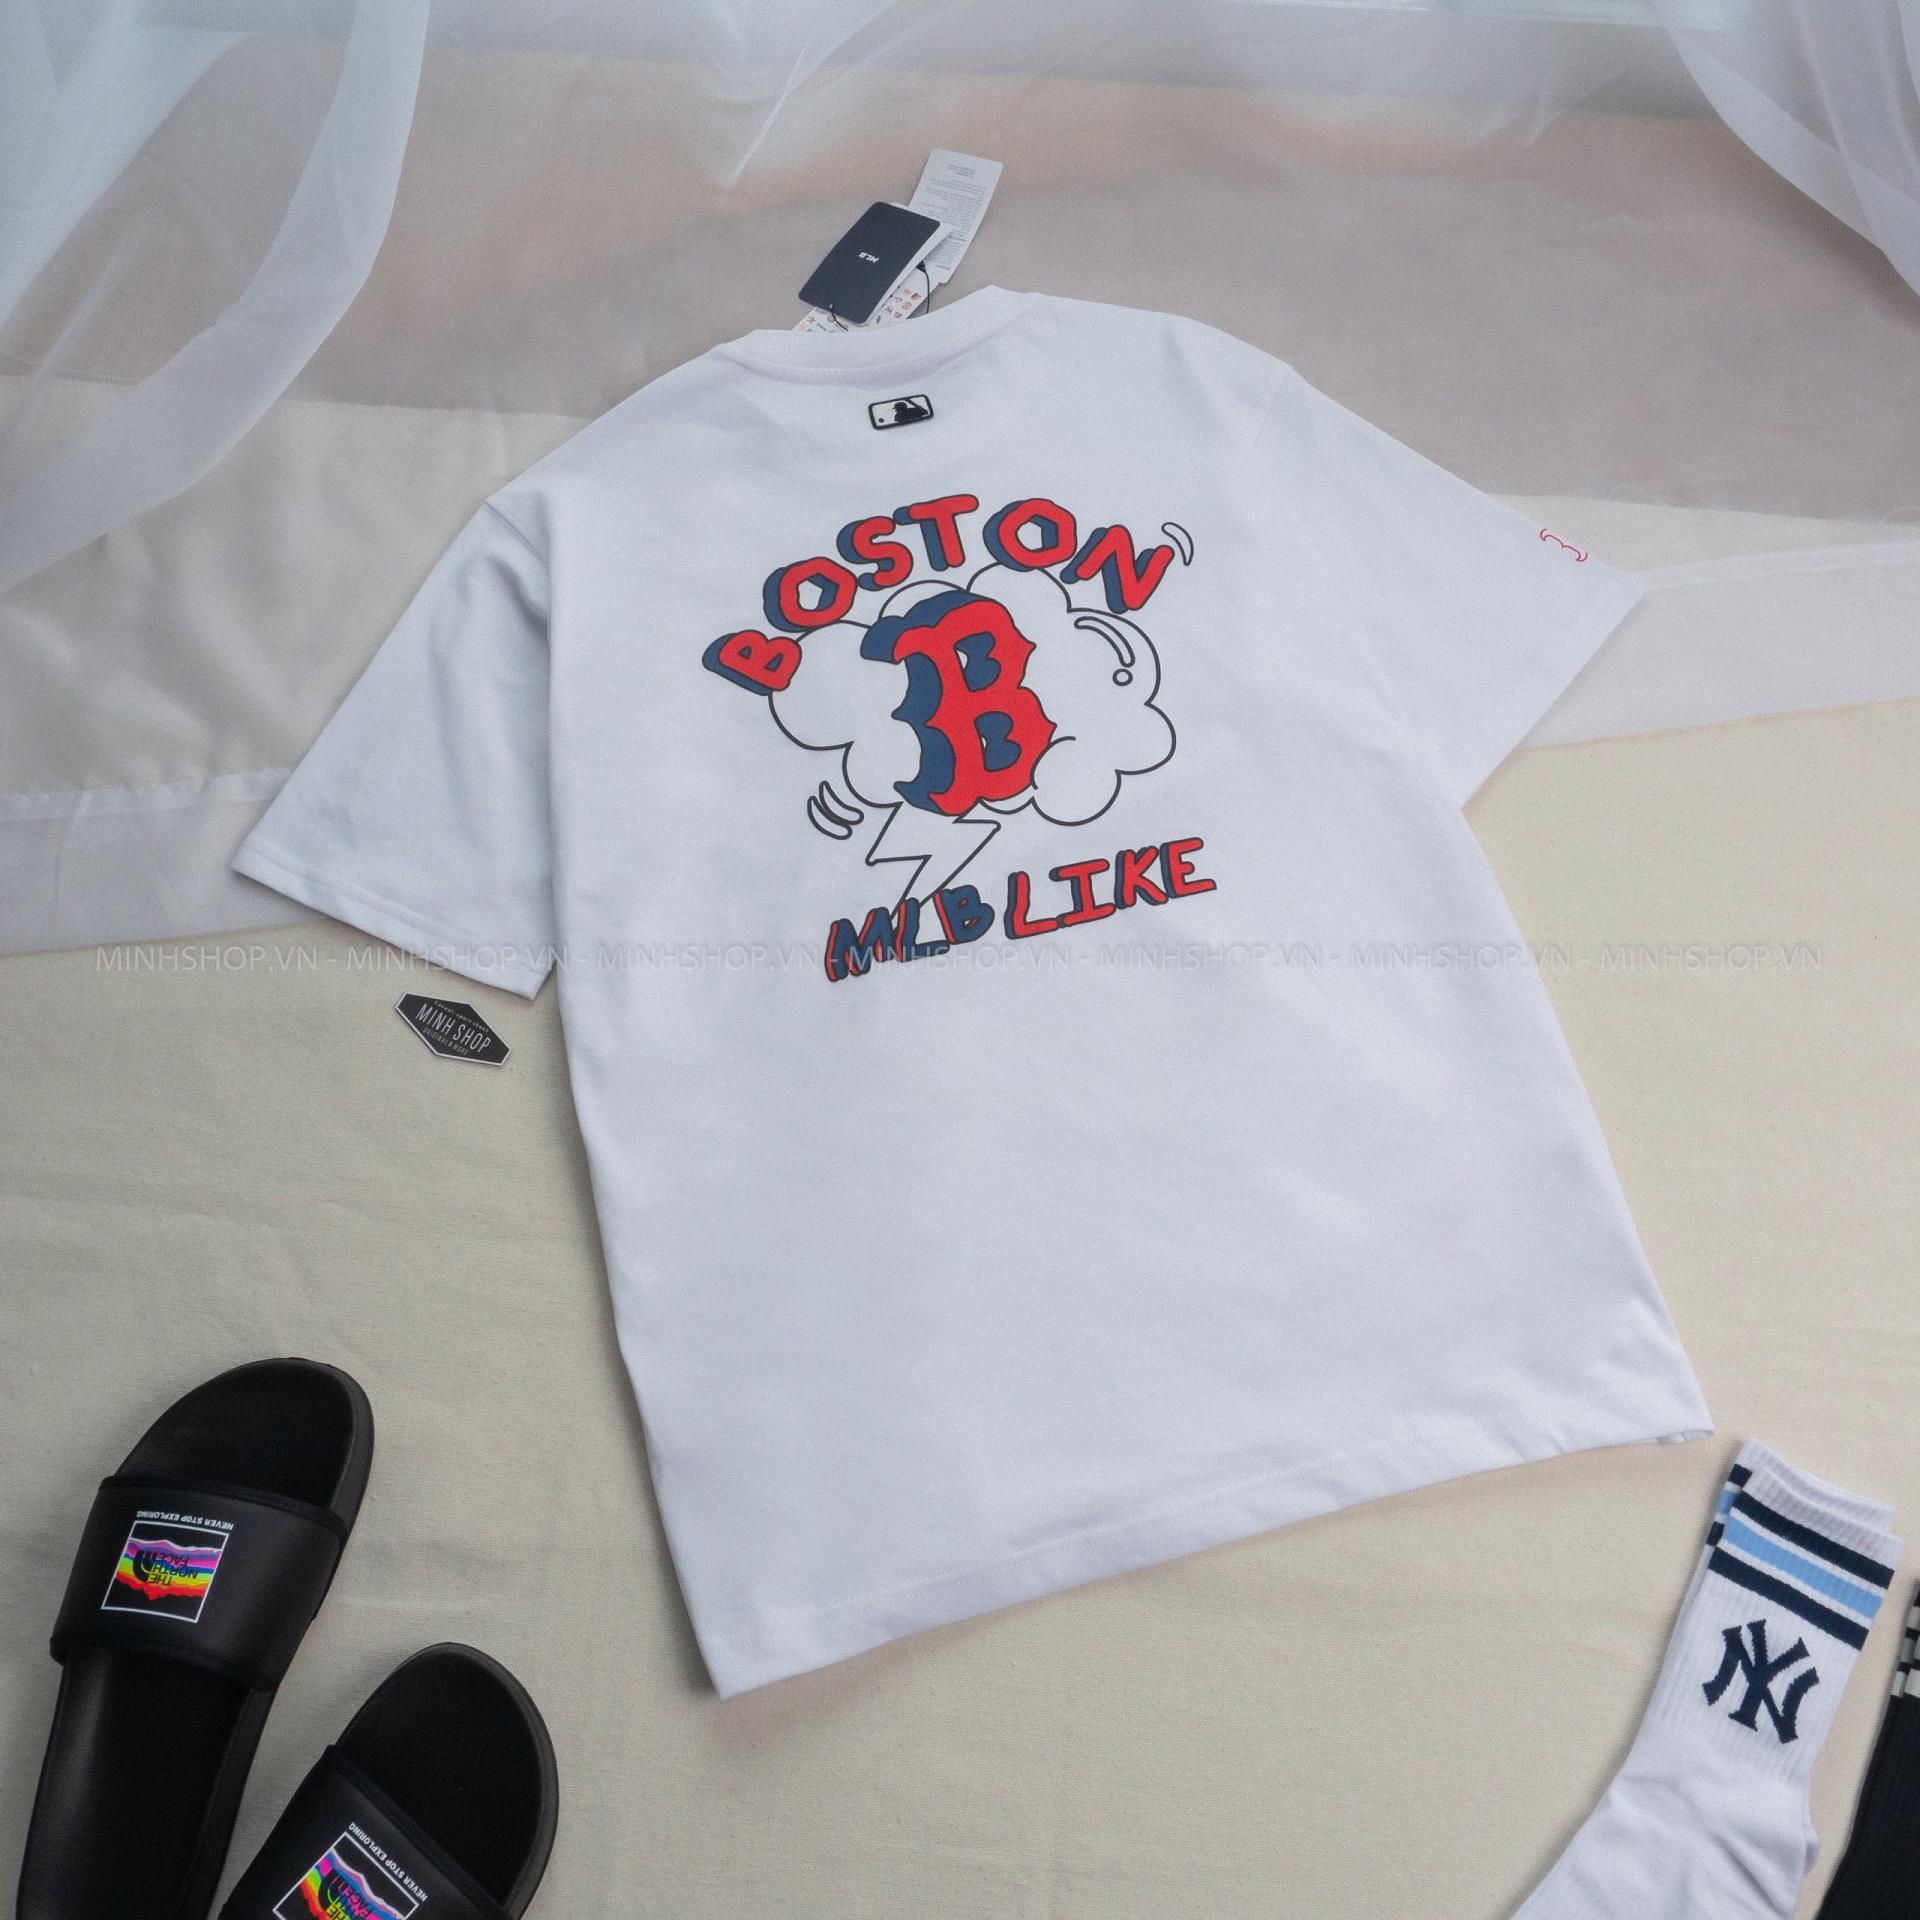 Mua Áo Phông MLB Like Popcorn Overfit Short Sleeve Tshirt Boston Red Sox  Màu Trắng Size L  MLB  Mua tại Vua Hàng Hiệu h028999